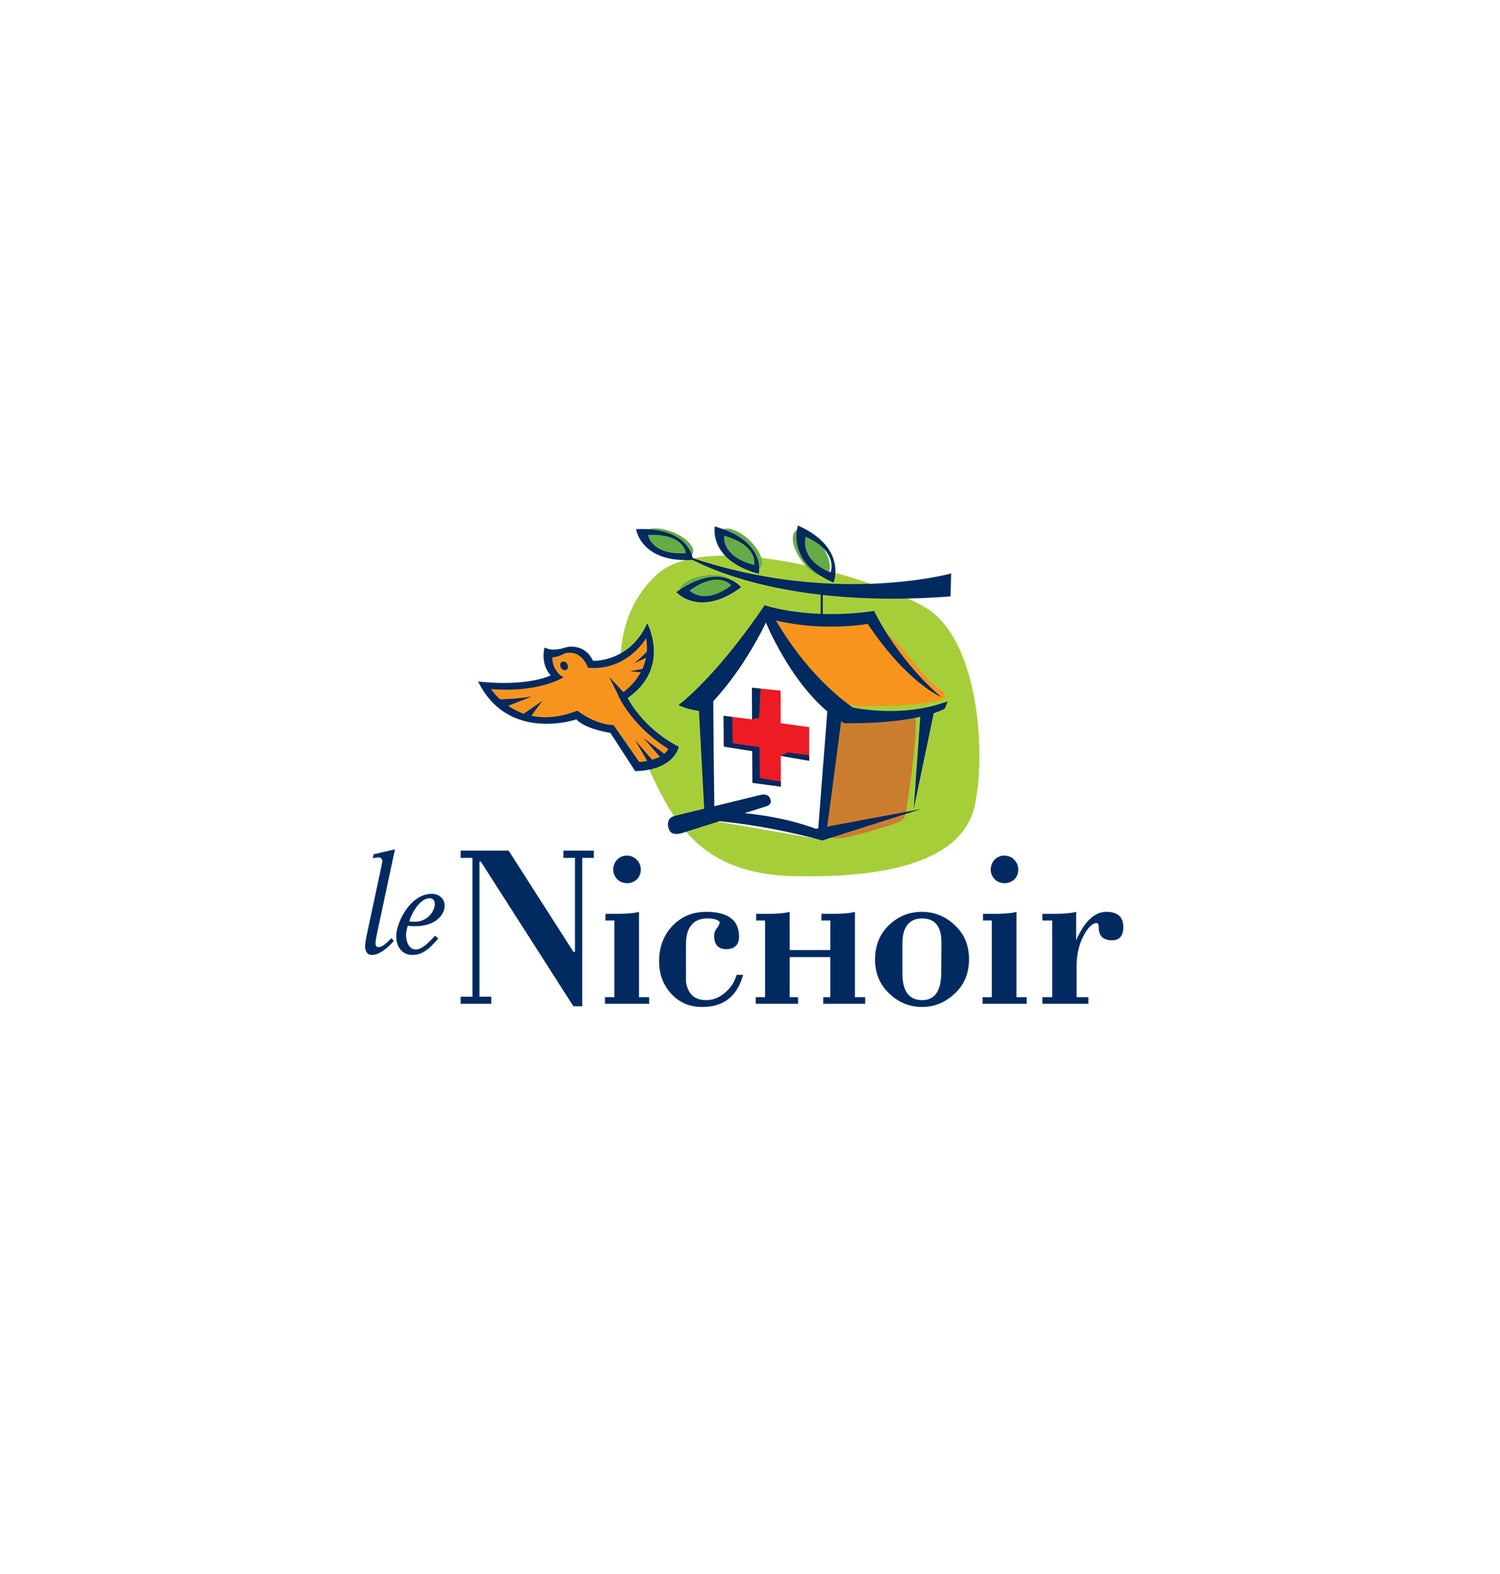 Le Nichoir logo